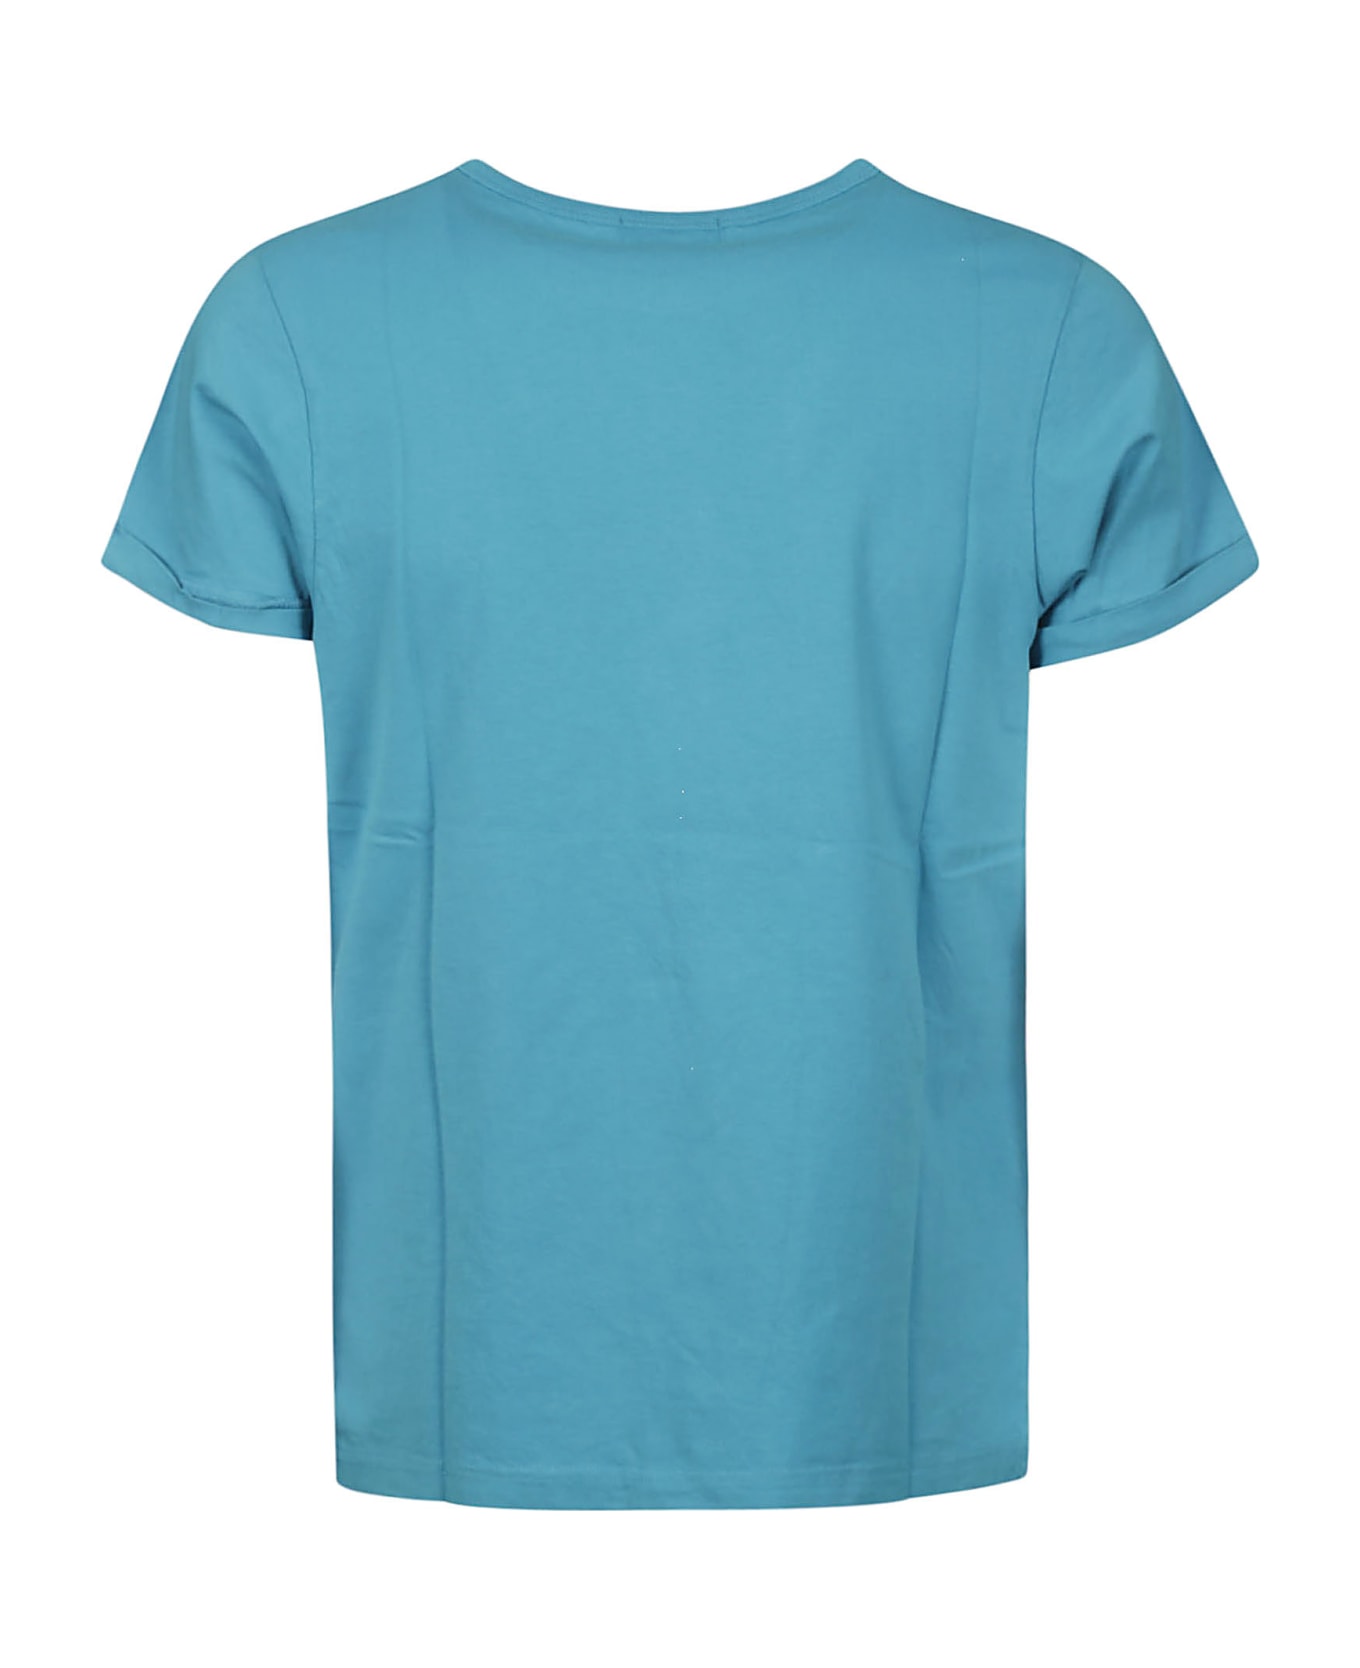 Maison Labiche Tee-shirt Poitou Offline/gots - Turquoise